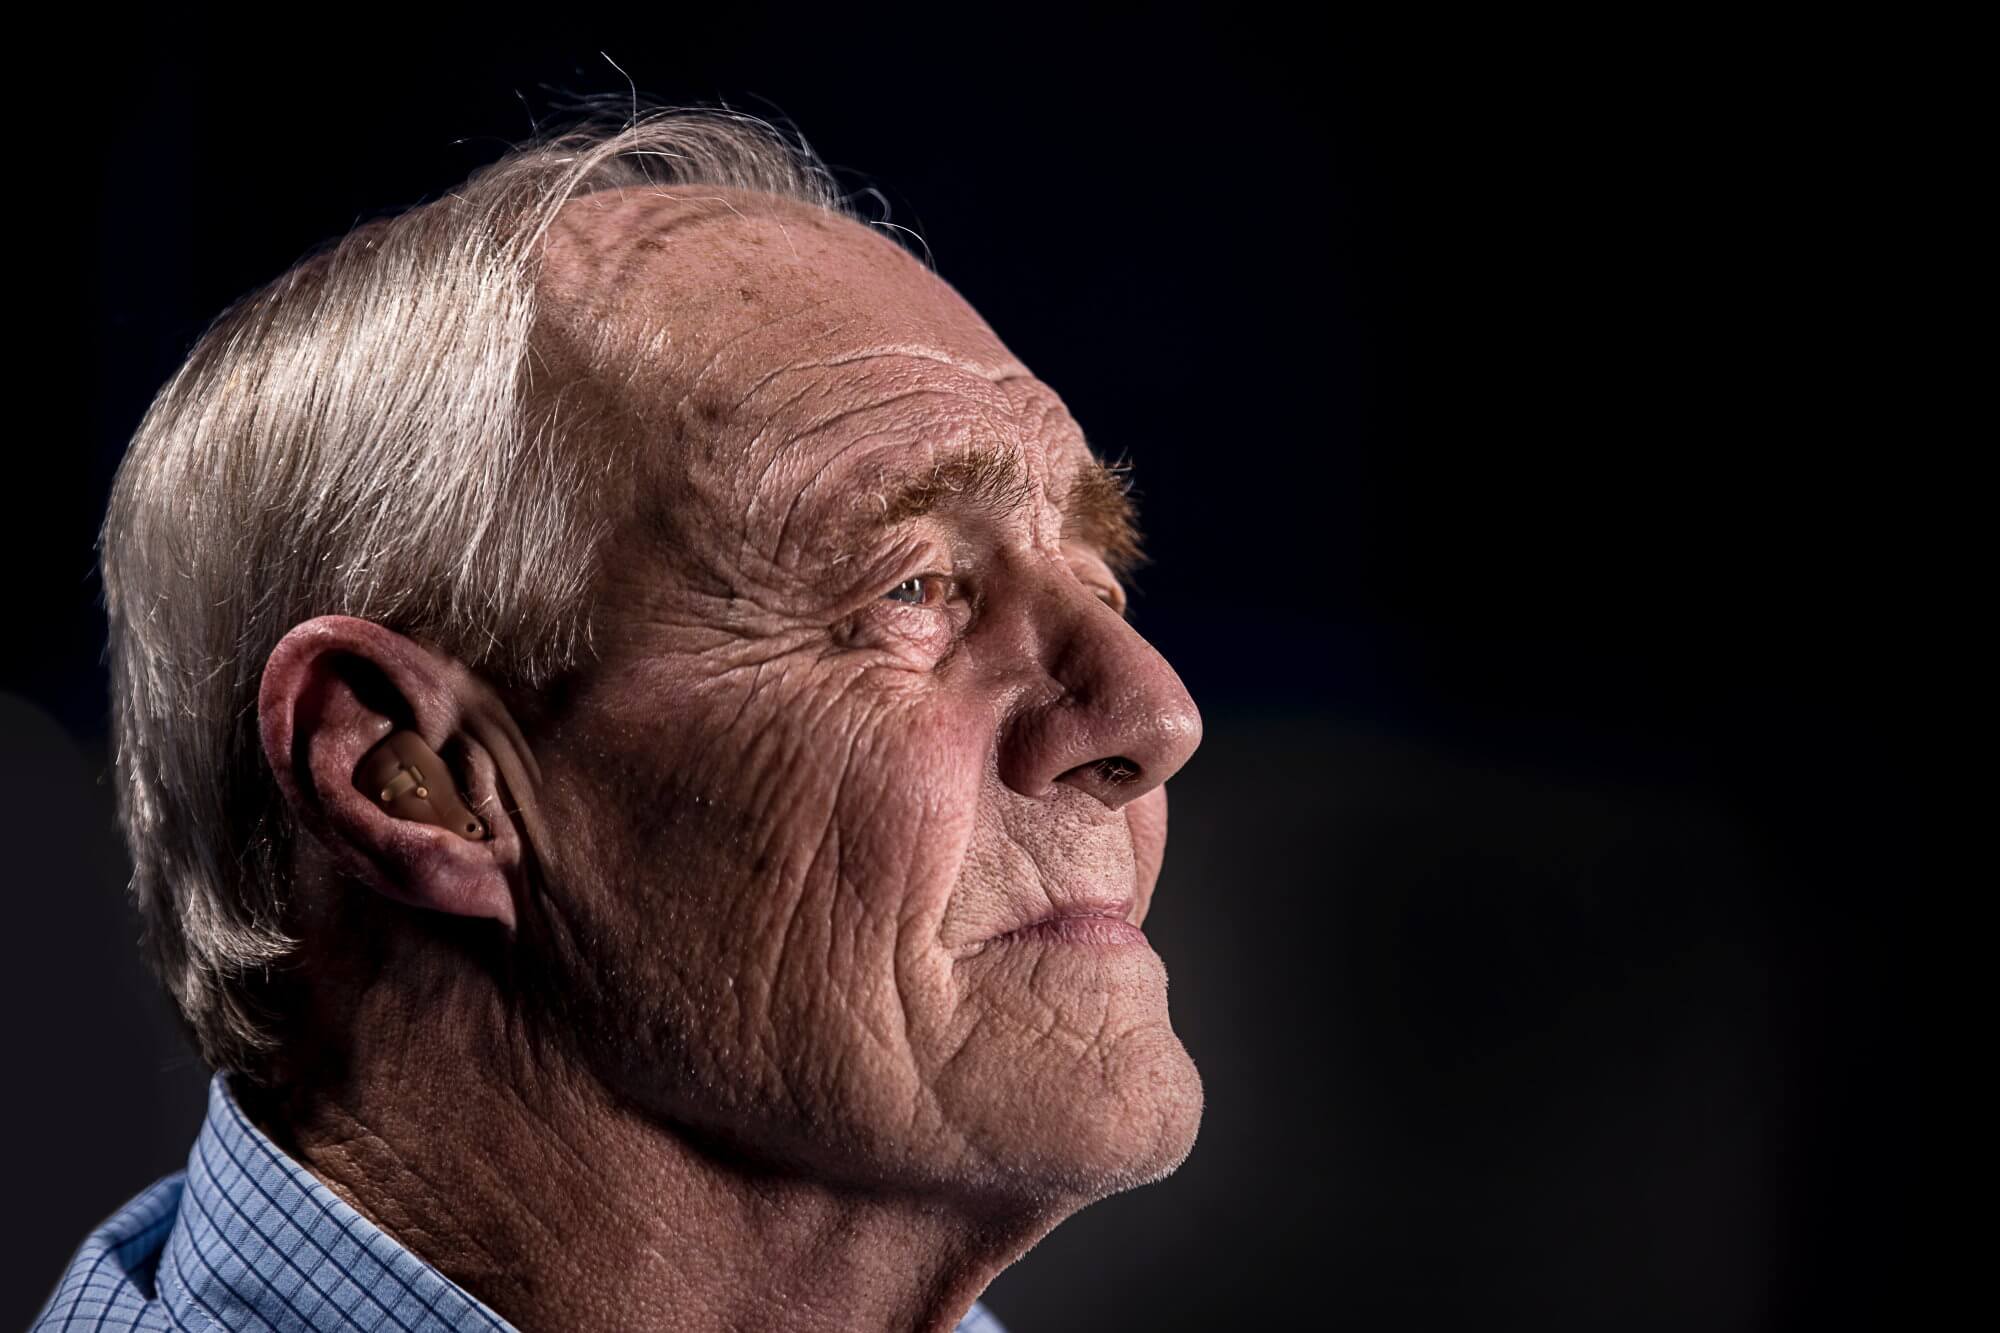 Desarrolló el método de tratamiento de la sordera mediante la restauración de las células auditivas